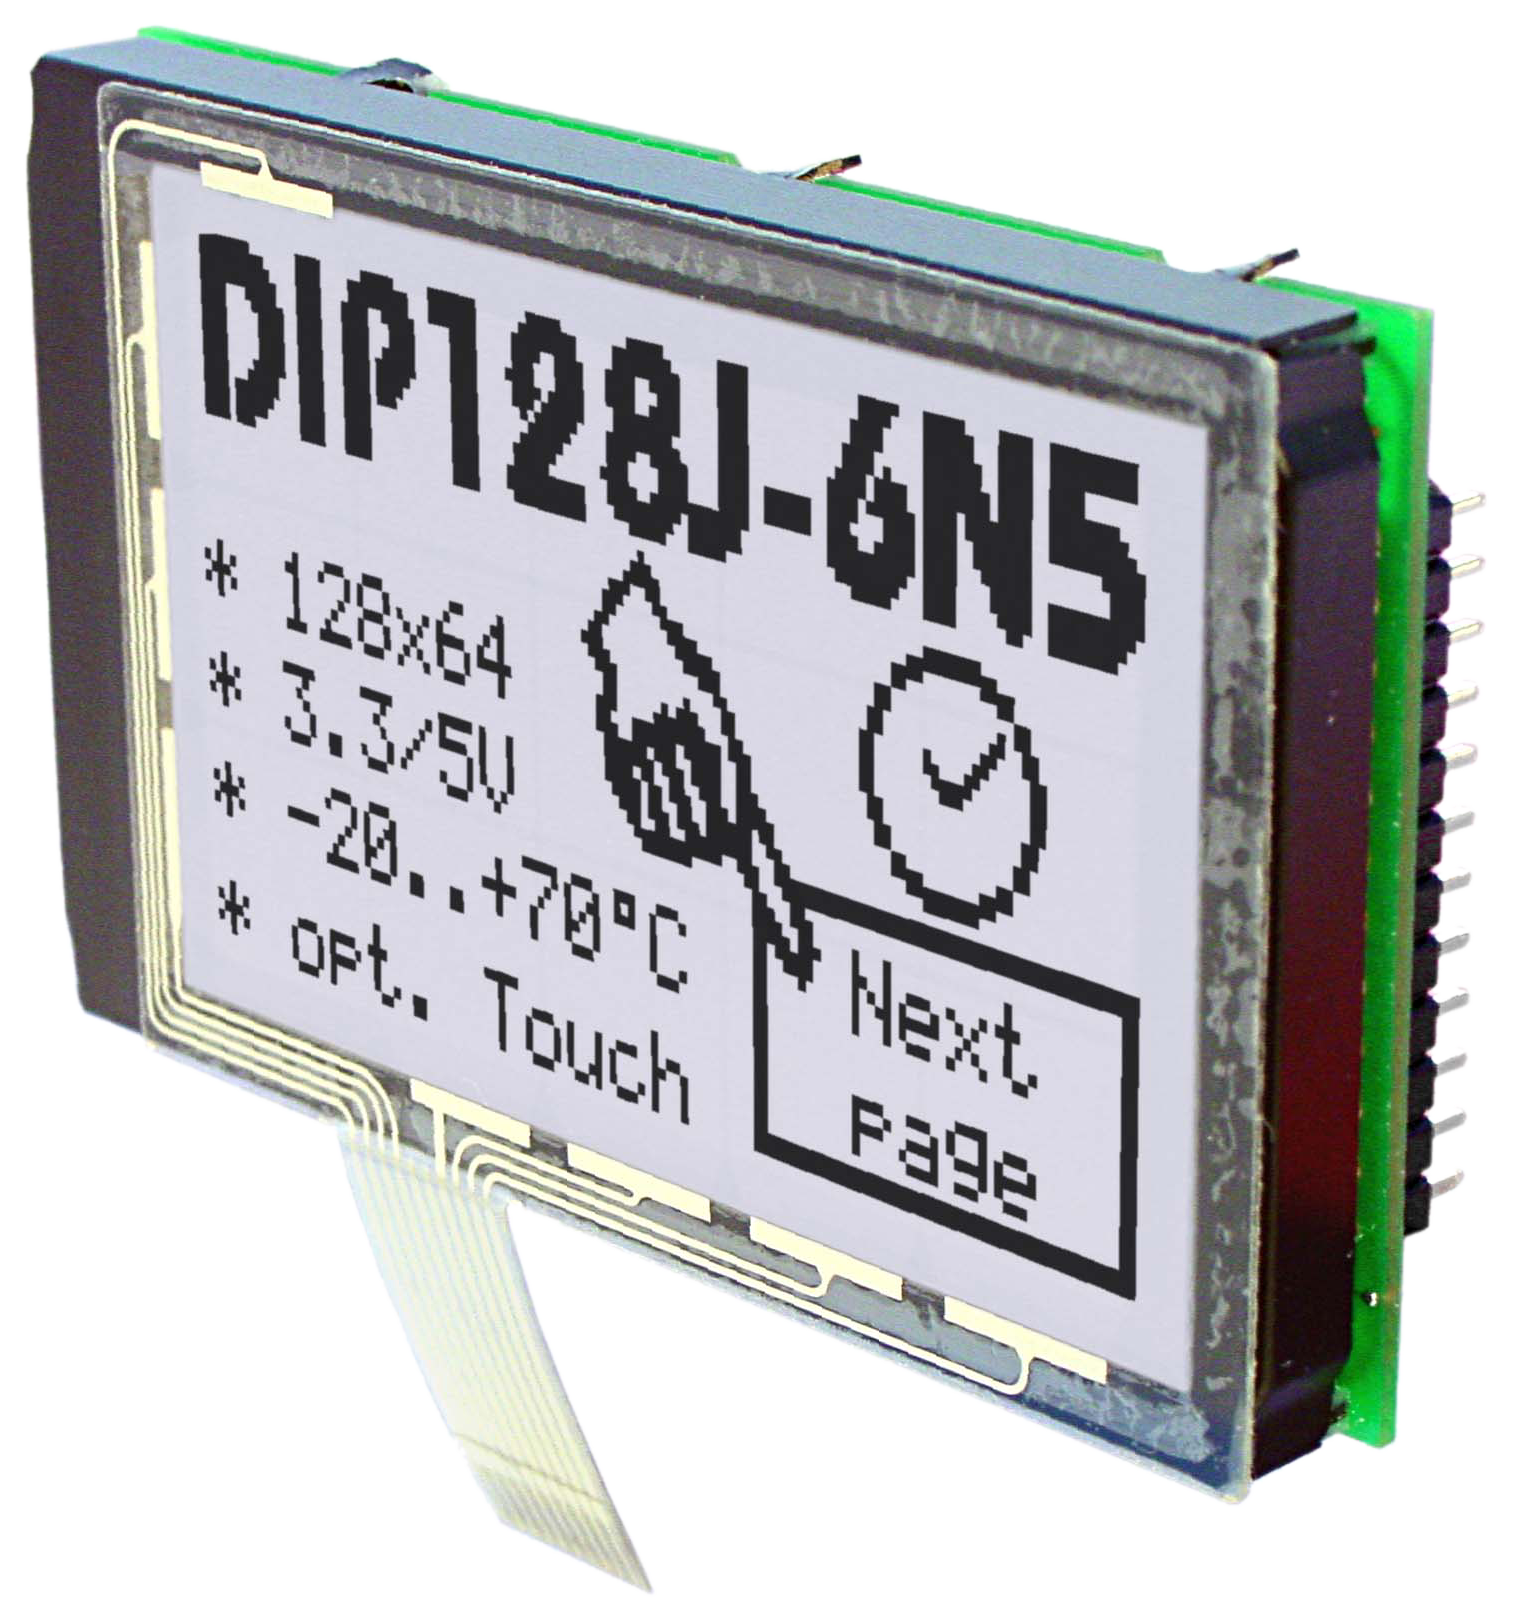 Chip-on-Board (COB) TEchnik, hier EA DIP128 als Grafikdisplay mit 128x64 Pixeln